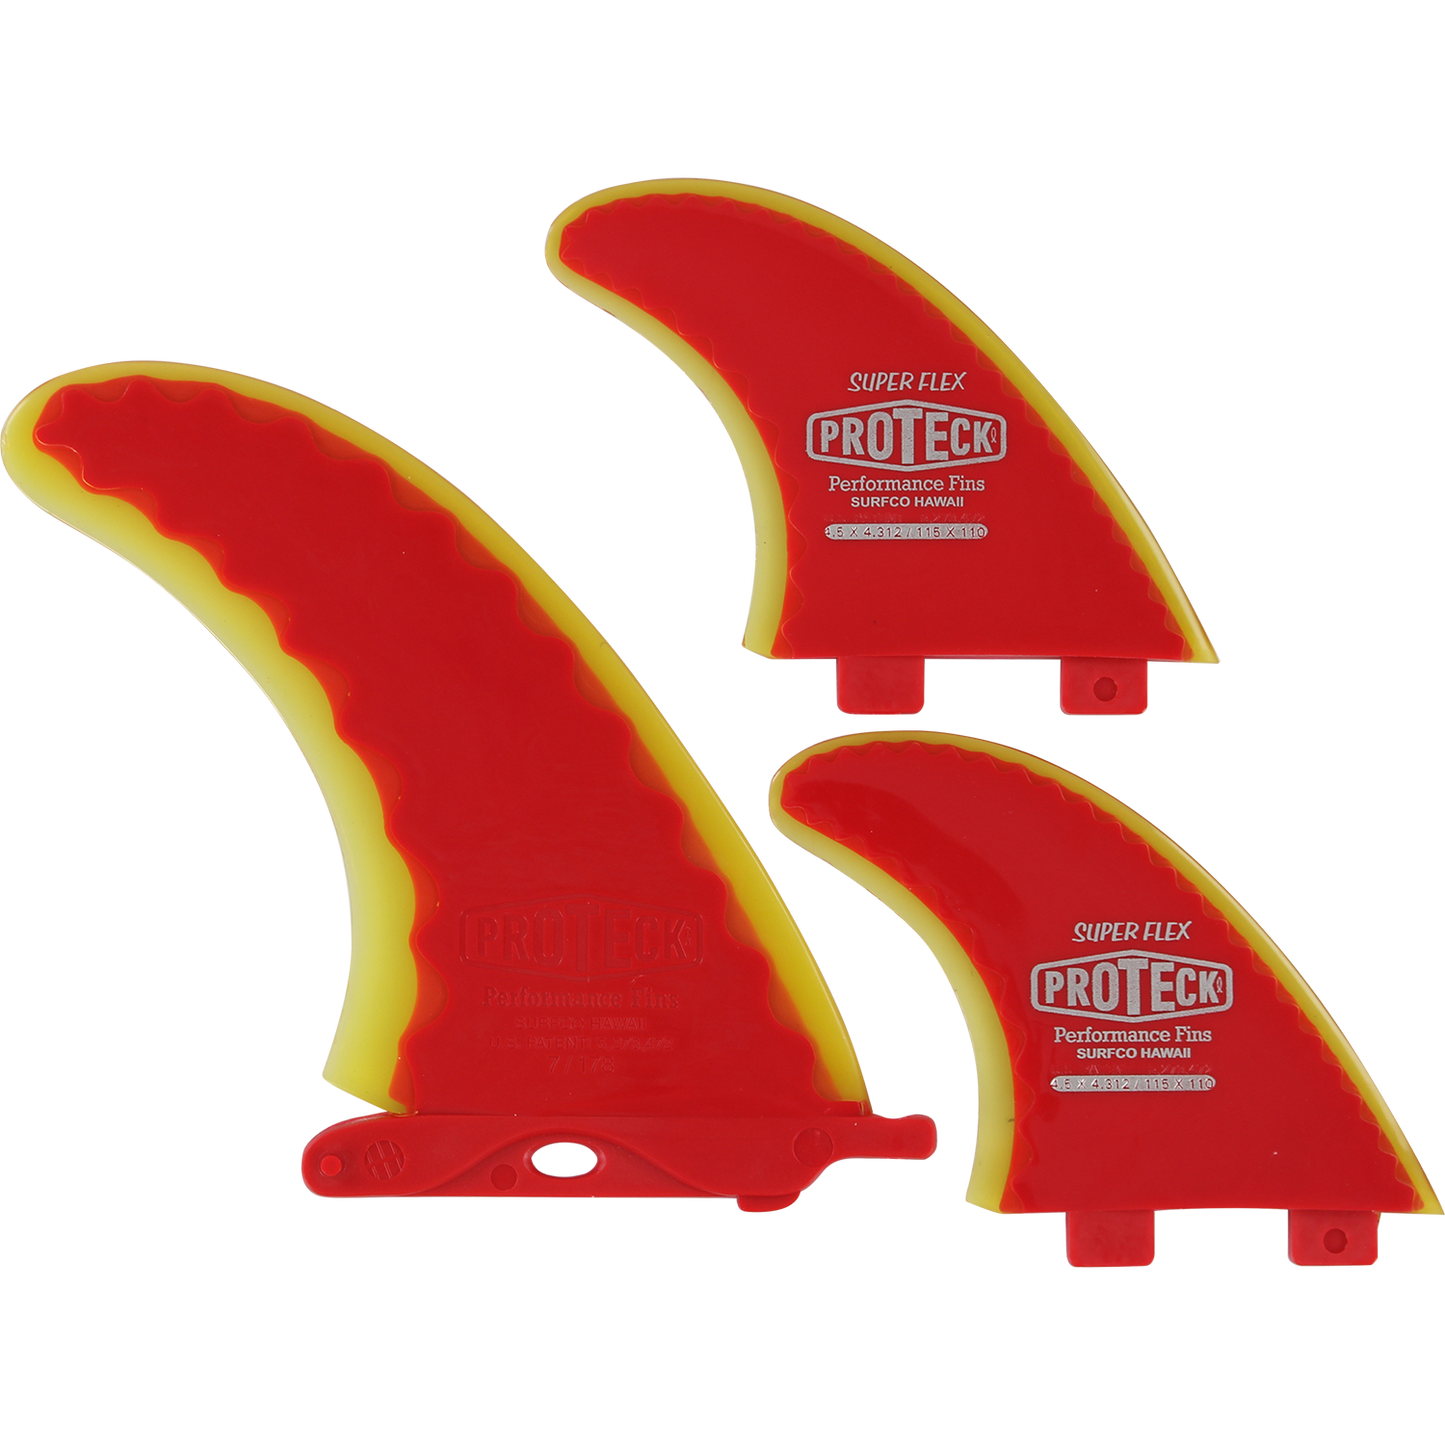 Proteck Super Flex FCS Surfboard Fins Combo 7.0+4.5 - Red / Yellow - SET OF 3pcs